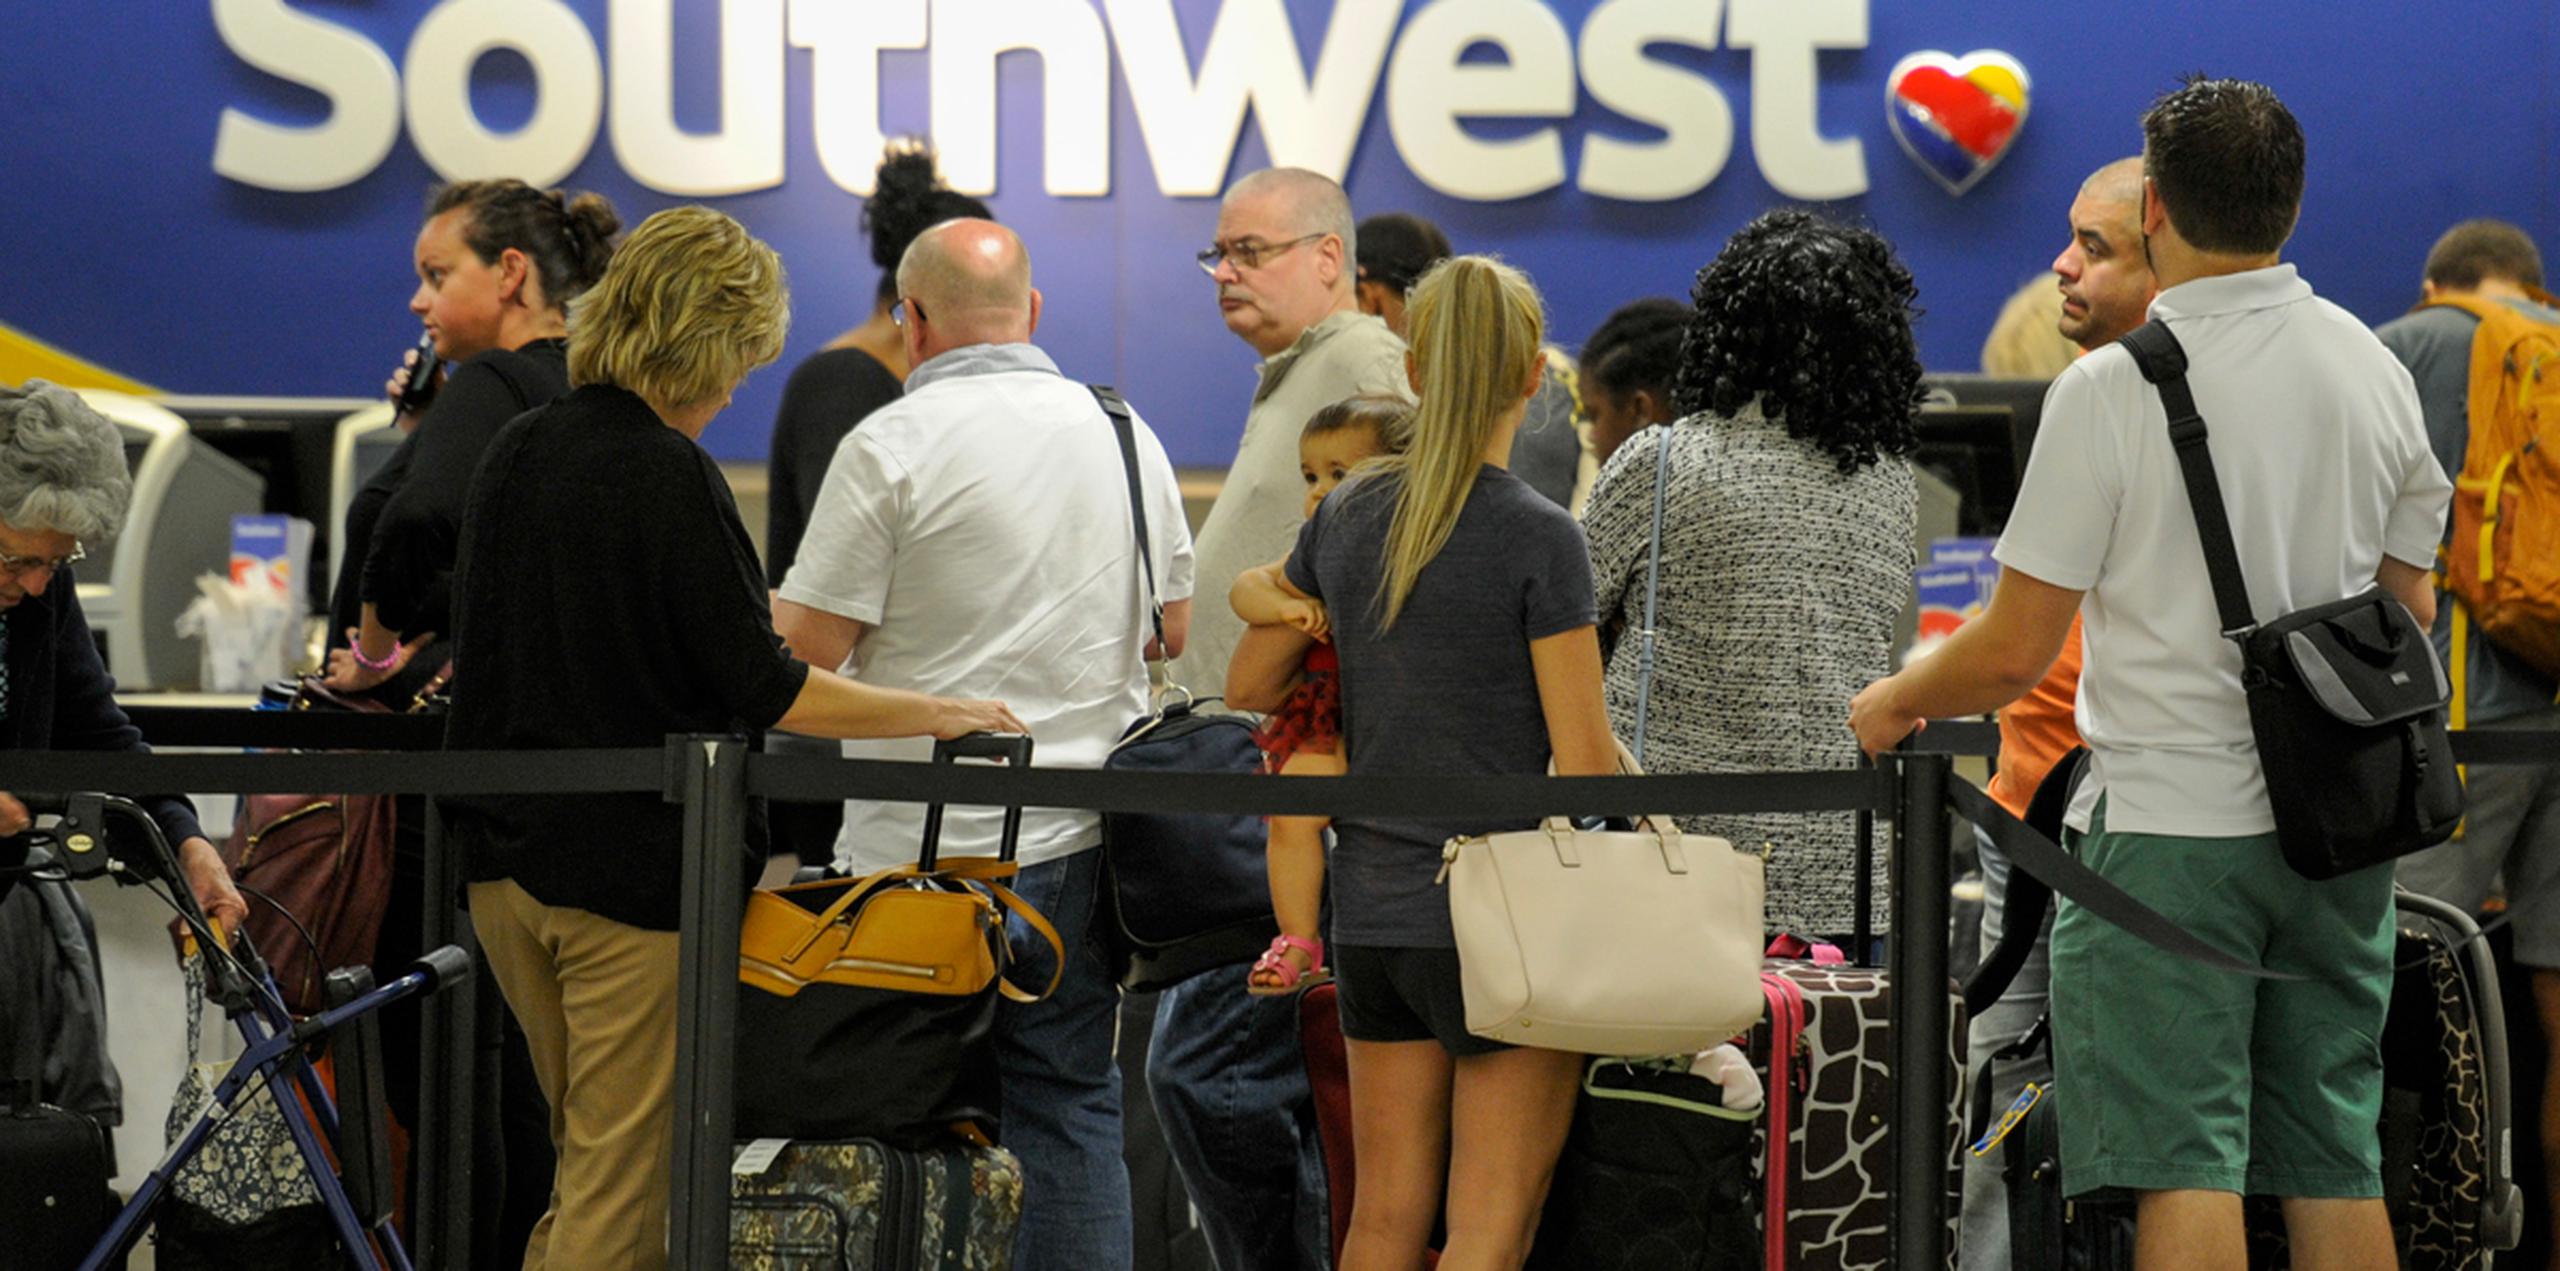 Muchos residentes de Tampa y Miami ya han tomado vuelos fuera de la zona que se espera sea impactada este fin de semana. (AP)